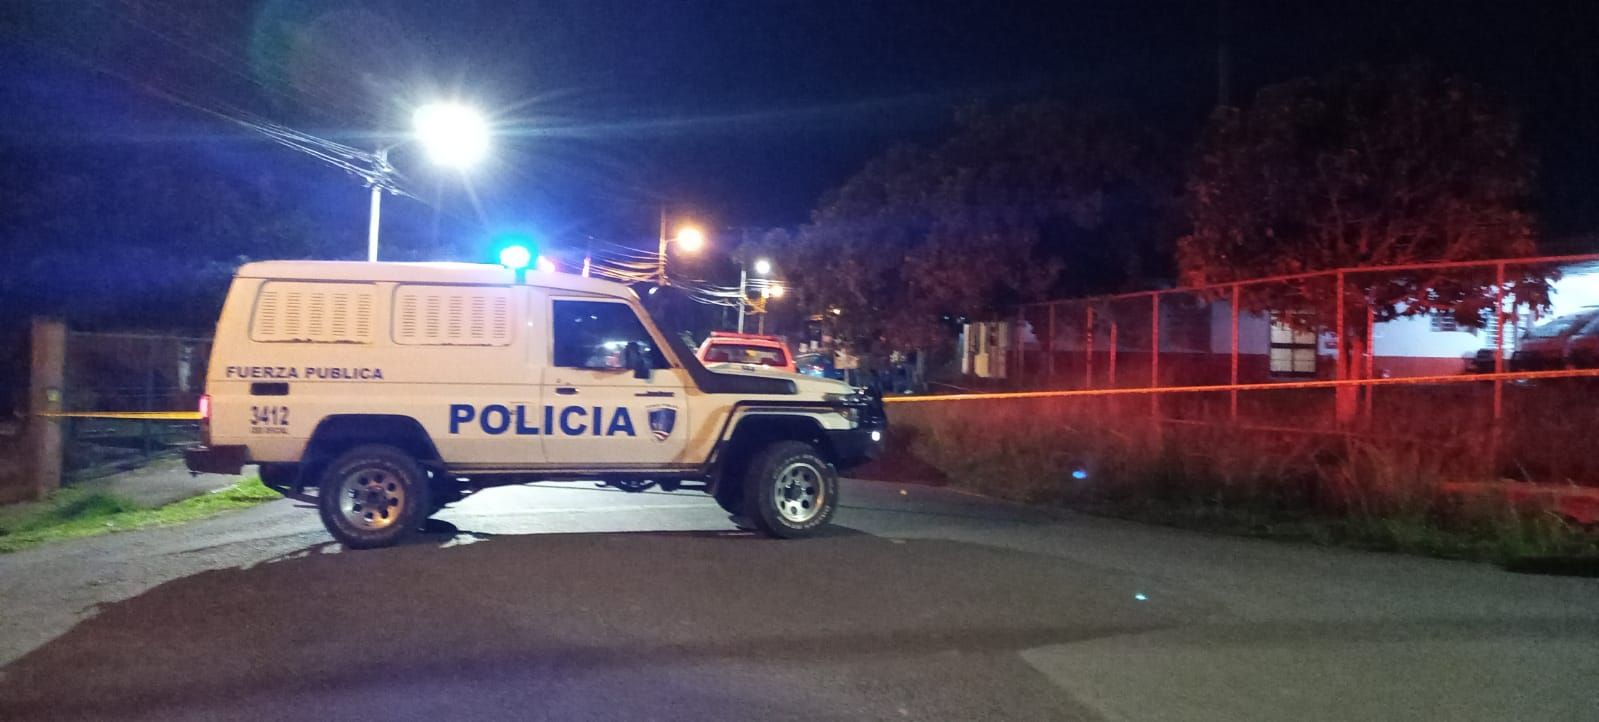 Diego Castillo recibió varios disparos cuando estaba dentro del carro con una mujer de apellido Porras,  en Santa Eulalia. El sospechoso de la agresión se entregó a las autoridades. Foto: Cortesía